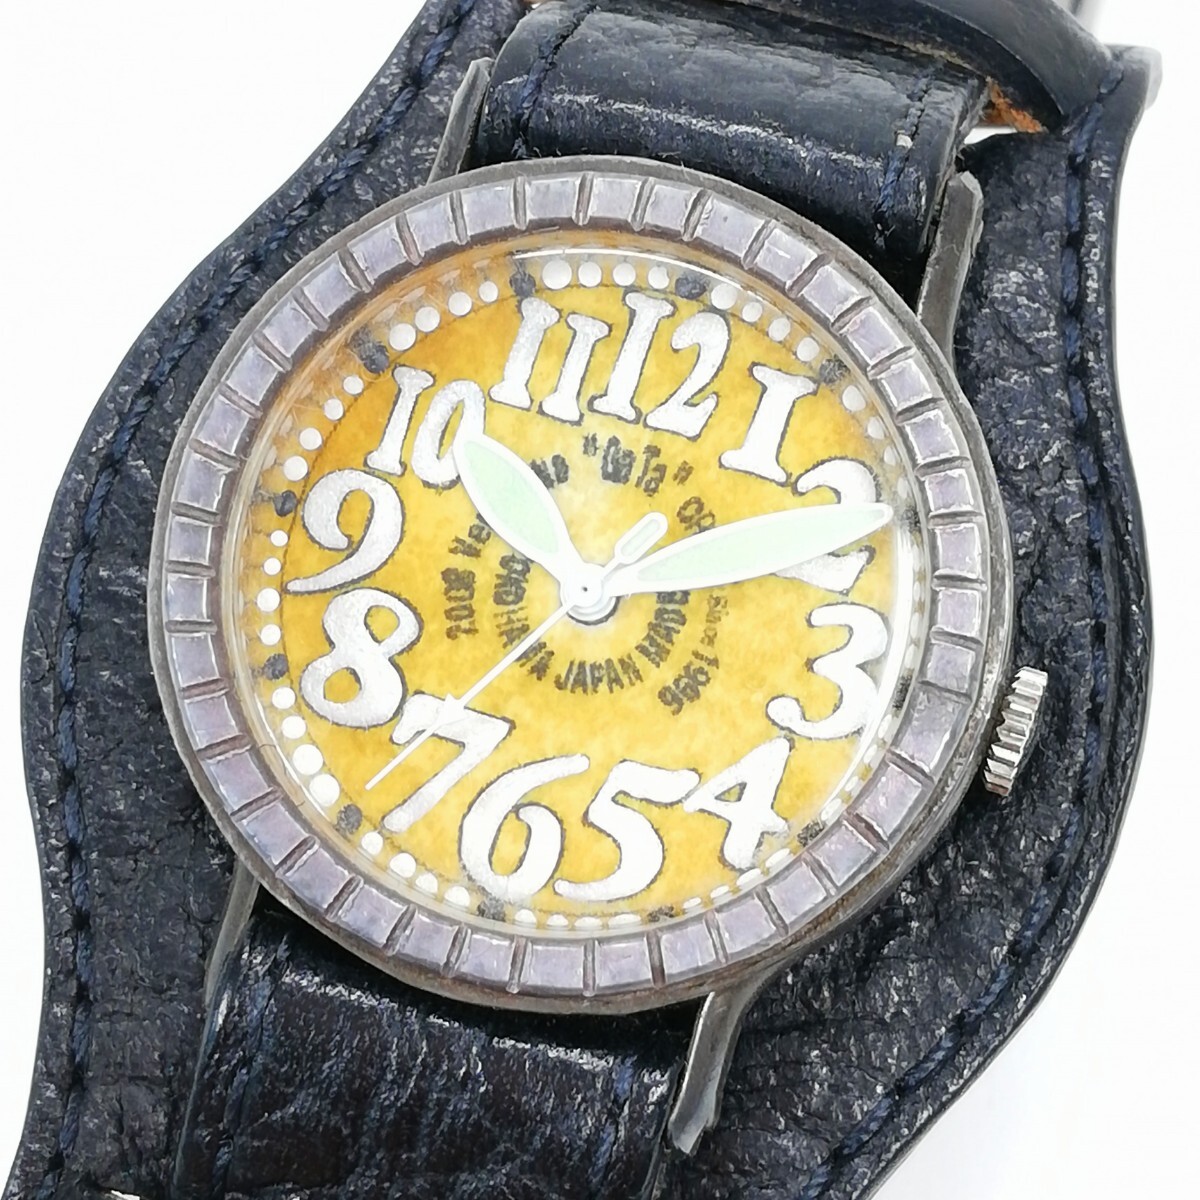 231 Reloj GaTa smith GaTa reloj de pulsera hecho a mano cuarzo analógico estilo antiguo artesanía esfera amarilla para hombre operación no confirmada, Analógico (tipo cuarzo), 3 manecillas (hora, minutos, segundos), otros